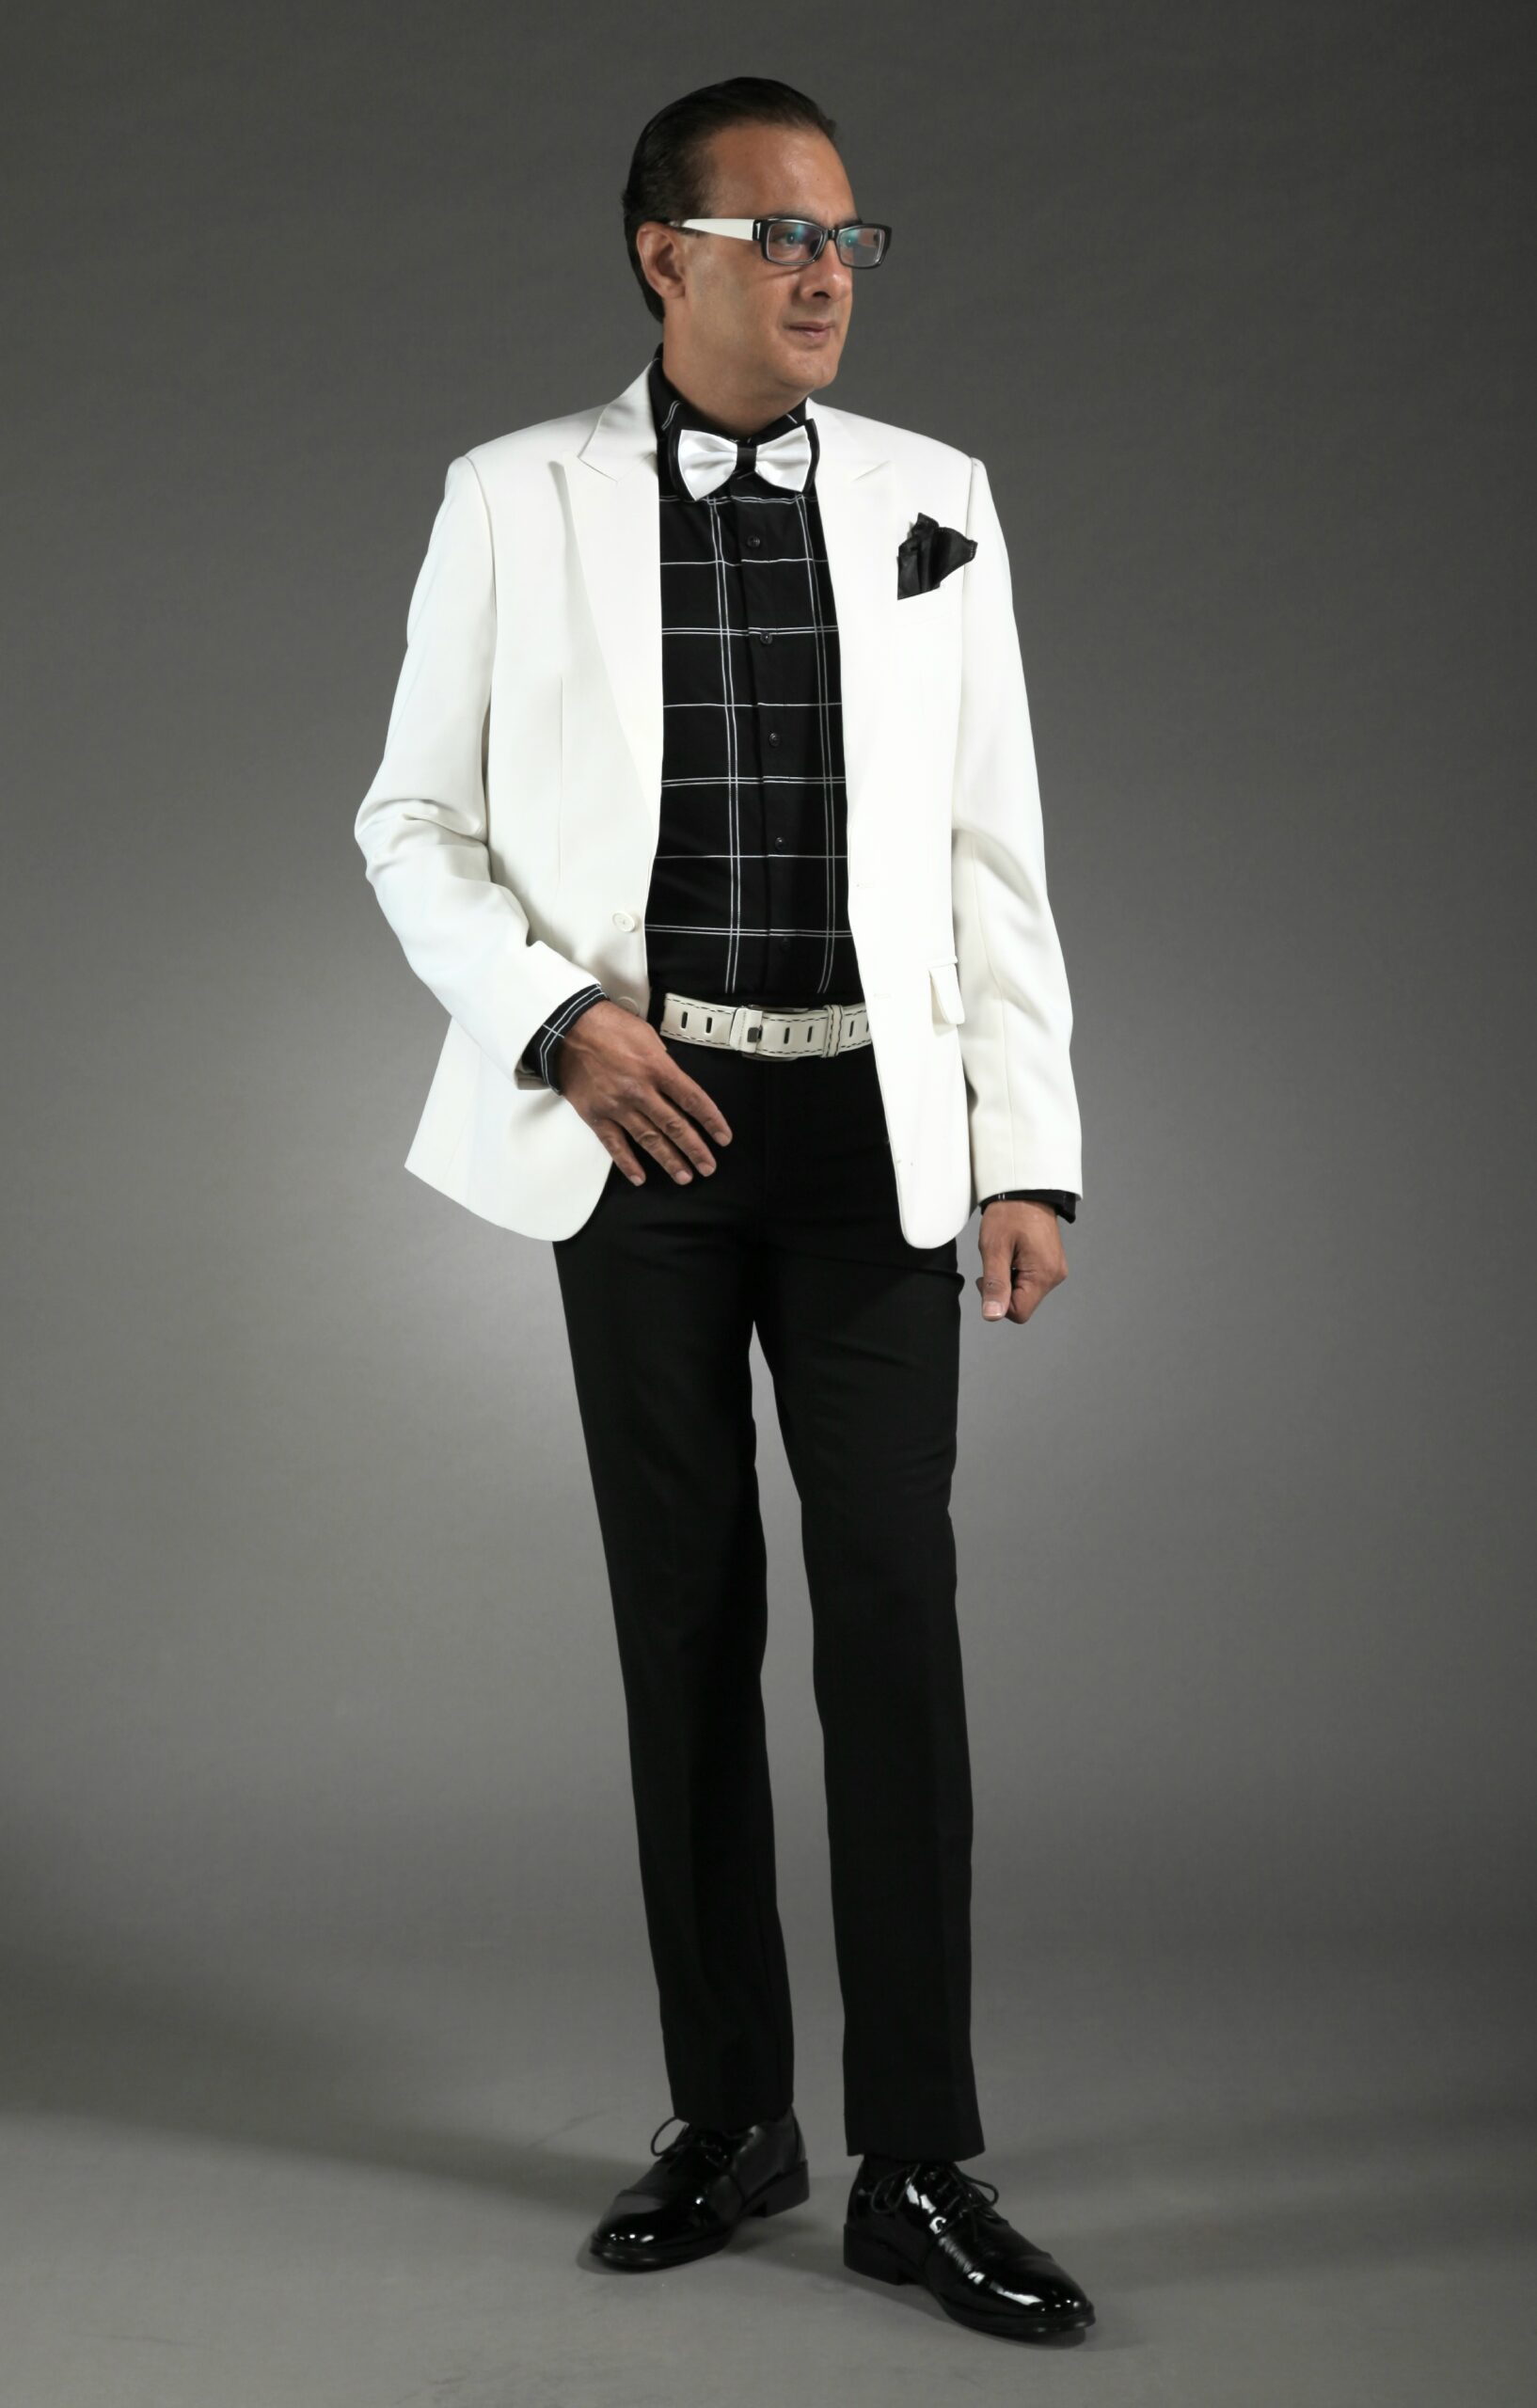 MST-5055-01-rent_rental_hire_tuxedo_suit_black_tie_suit_designer_suits_shop_tailor_tailors_singapore_wedding